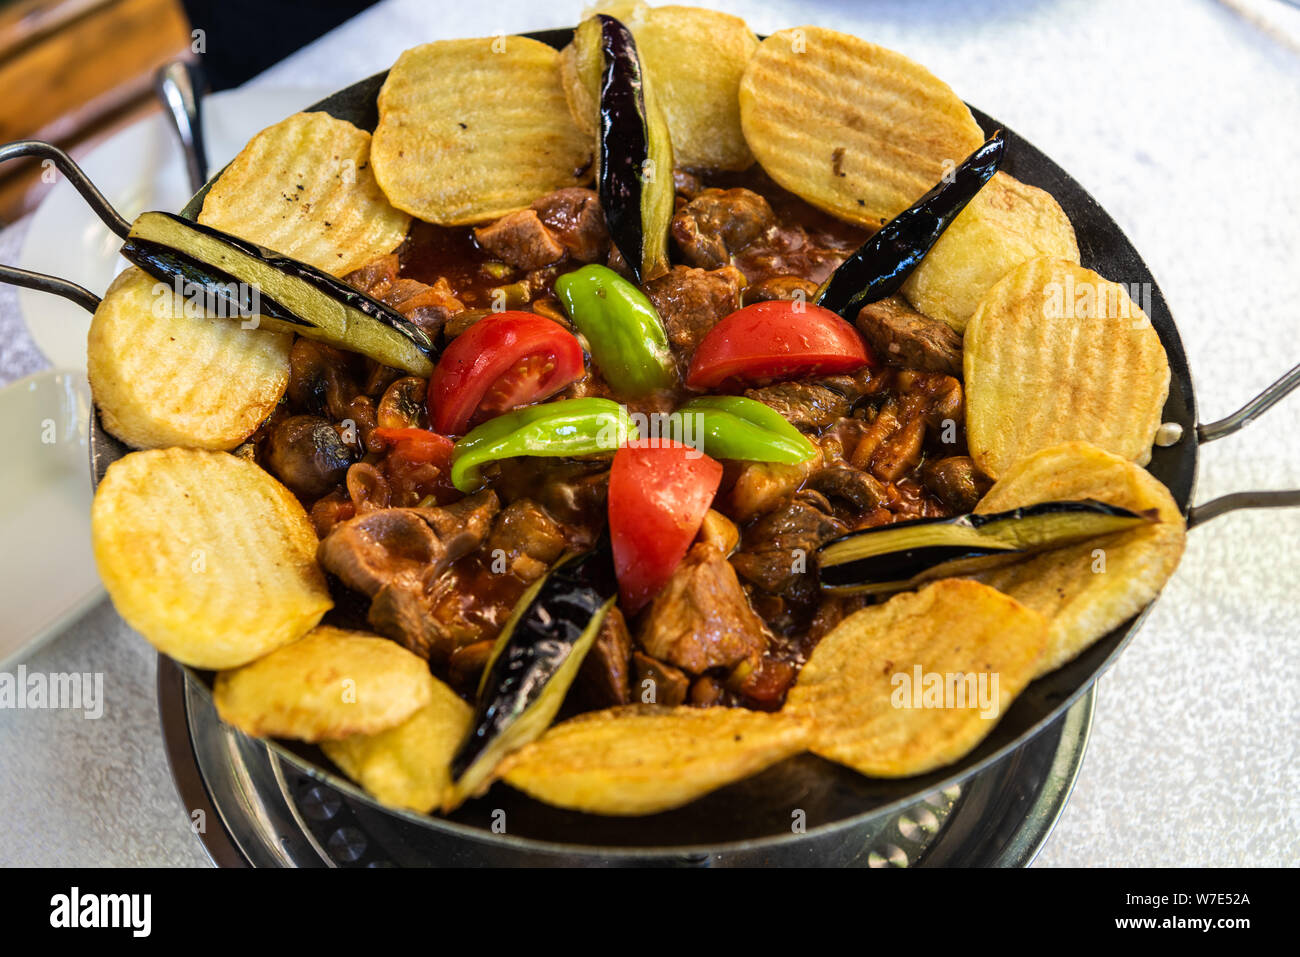 Gebratenes sac Gericht mit Fleisch, Gemüse, Pilze und Kartoffeln, serviert auf einer Heizplatte in einem Restaurant in Aserbaidschan. Stockfoto